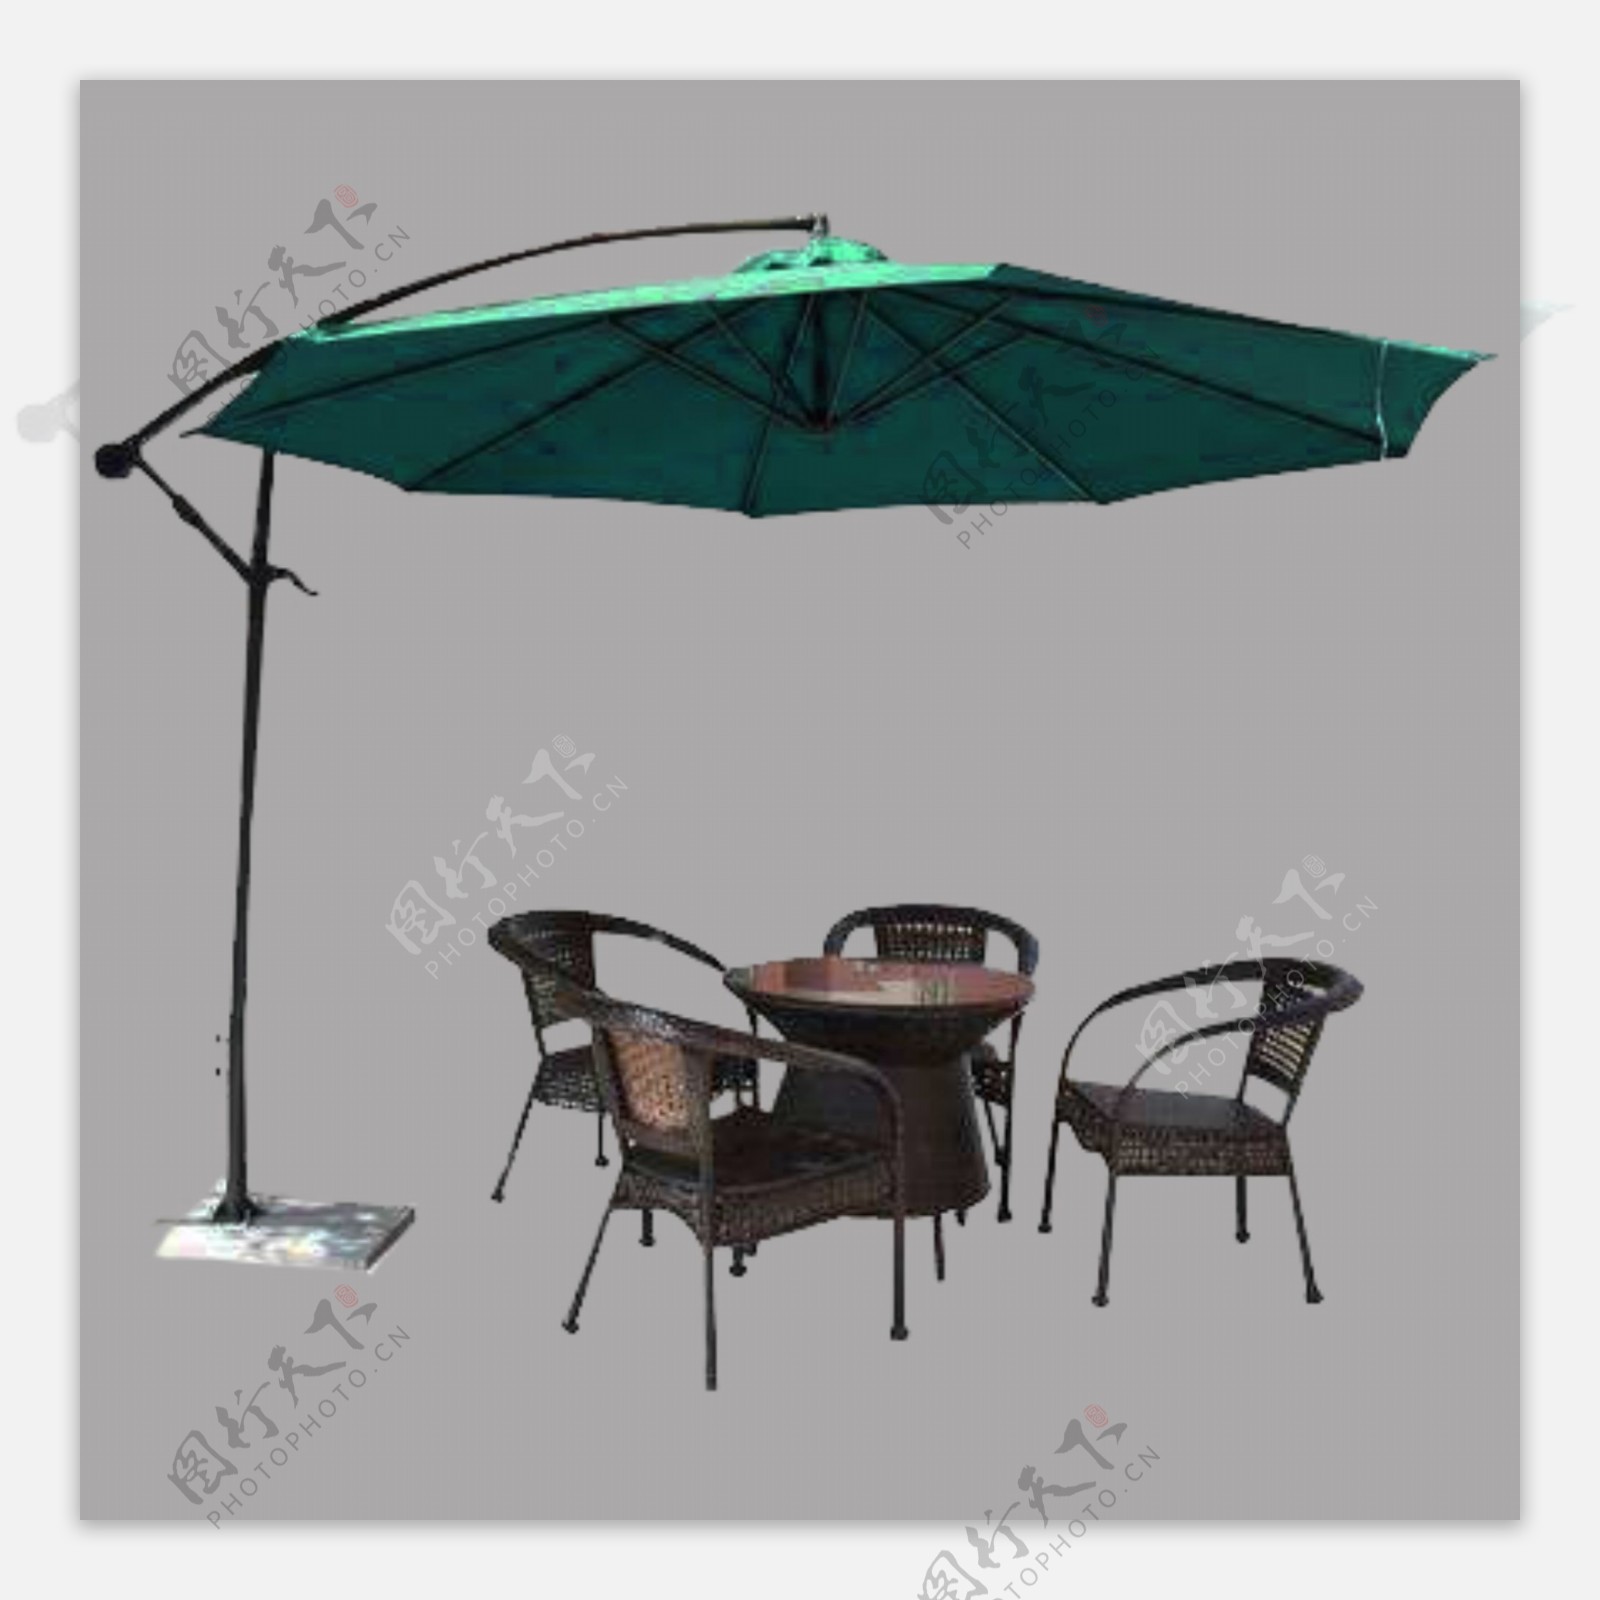 户外餐桌与遮阳伞